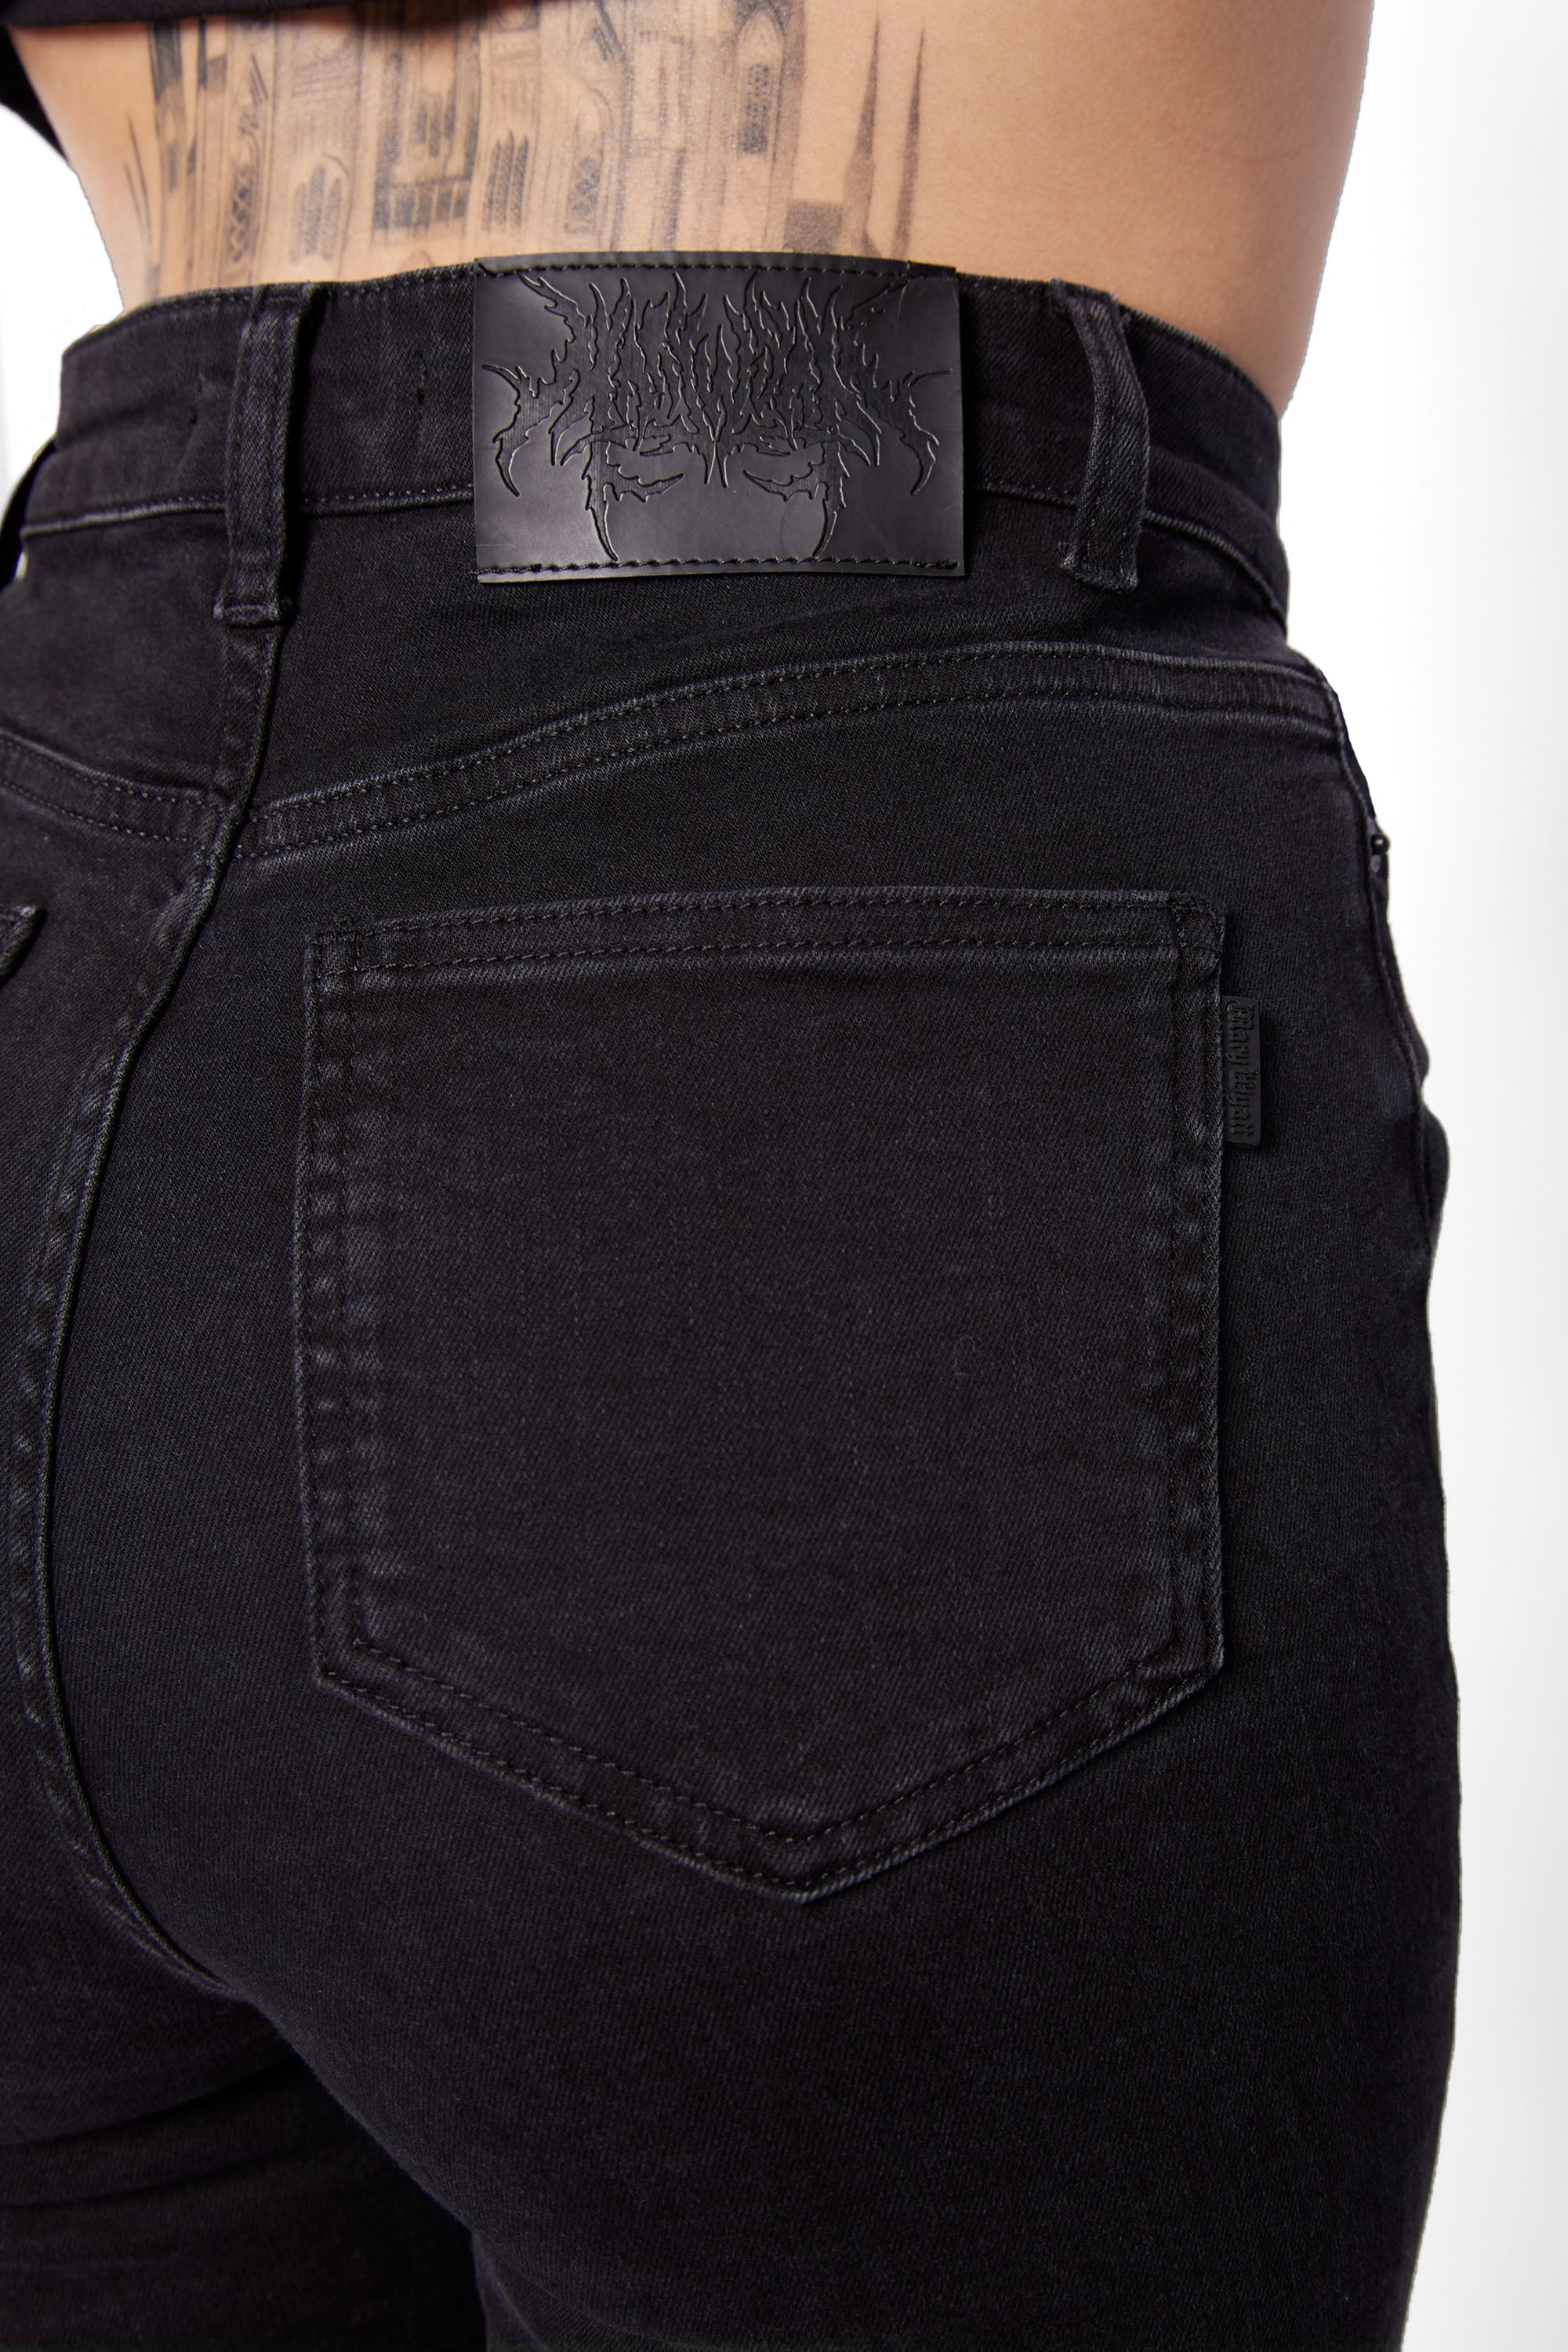 Dillinger' Retro Mod Drainpipe Jeans | Retro Mod Skinny Jeans